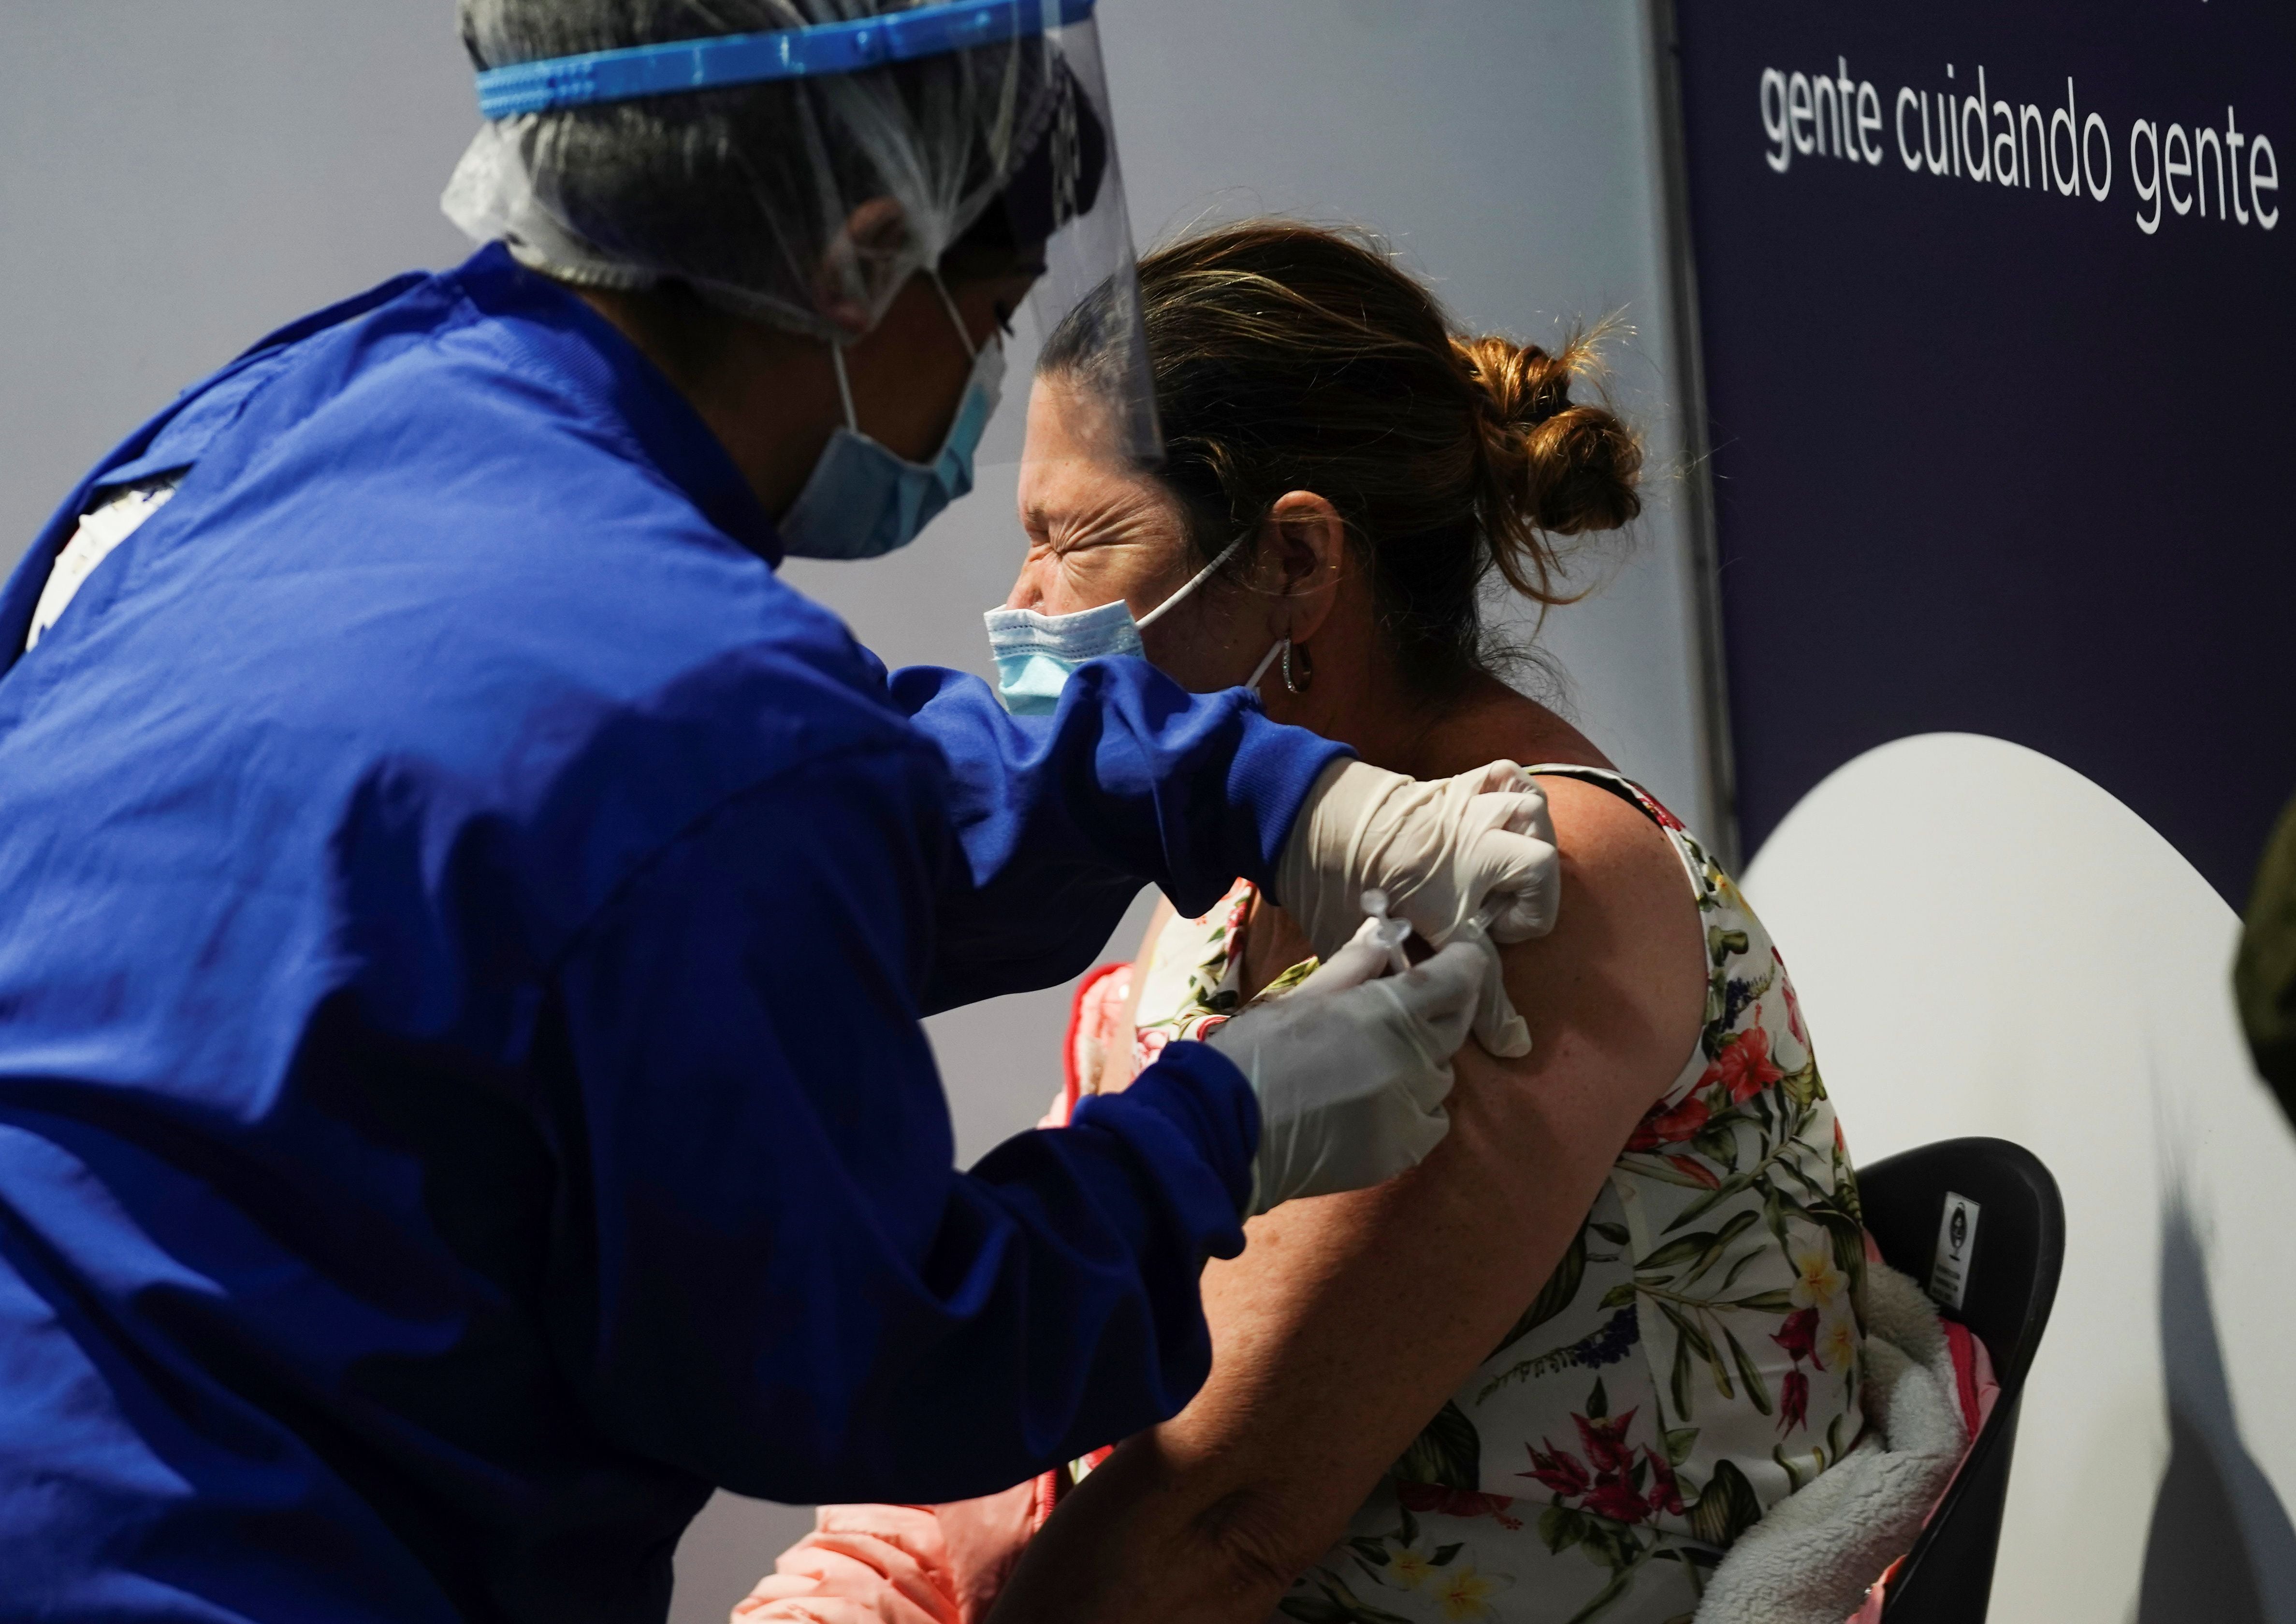 Una mujer recibe una vacuna contra el COVID-19 en un centro de inmunización instalado por el Gobierno en Bogotá, Colombia. Junio 8, 2021. REUTERS/Nathalia Angarita